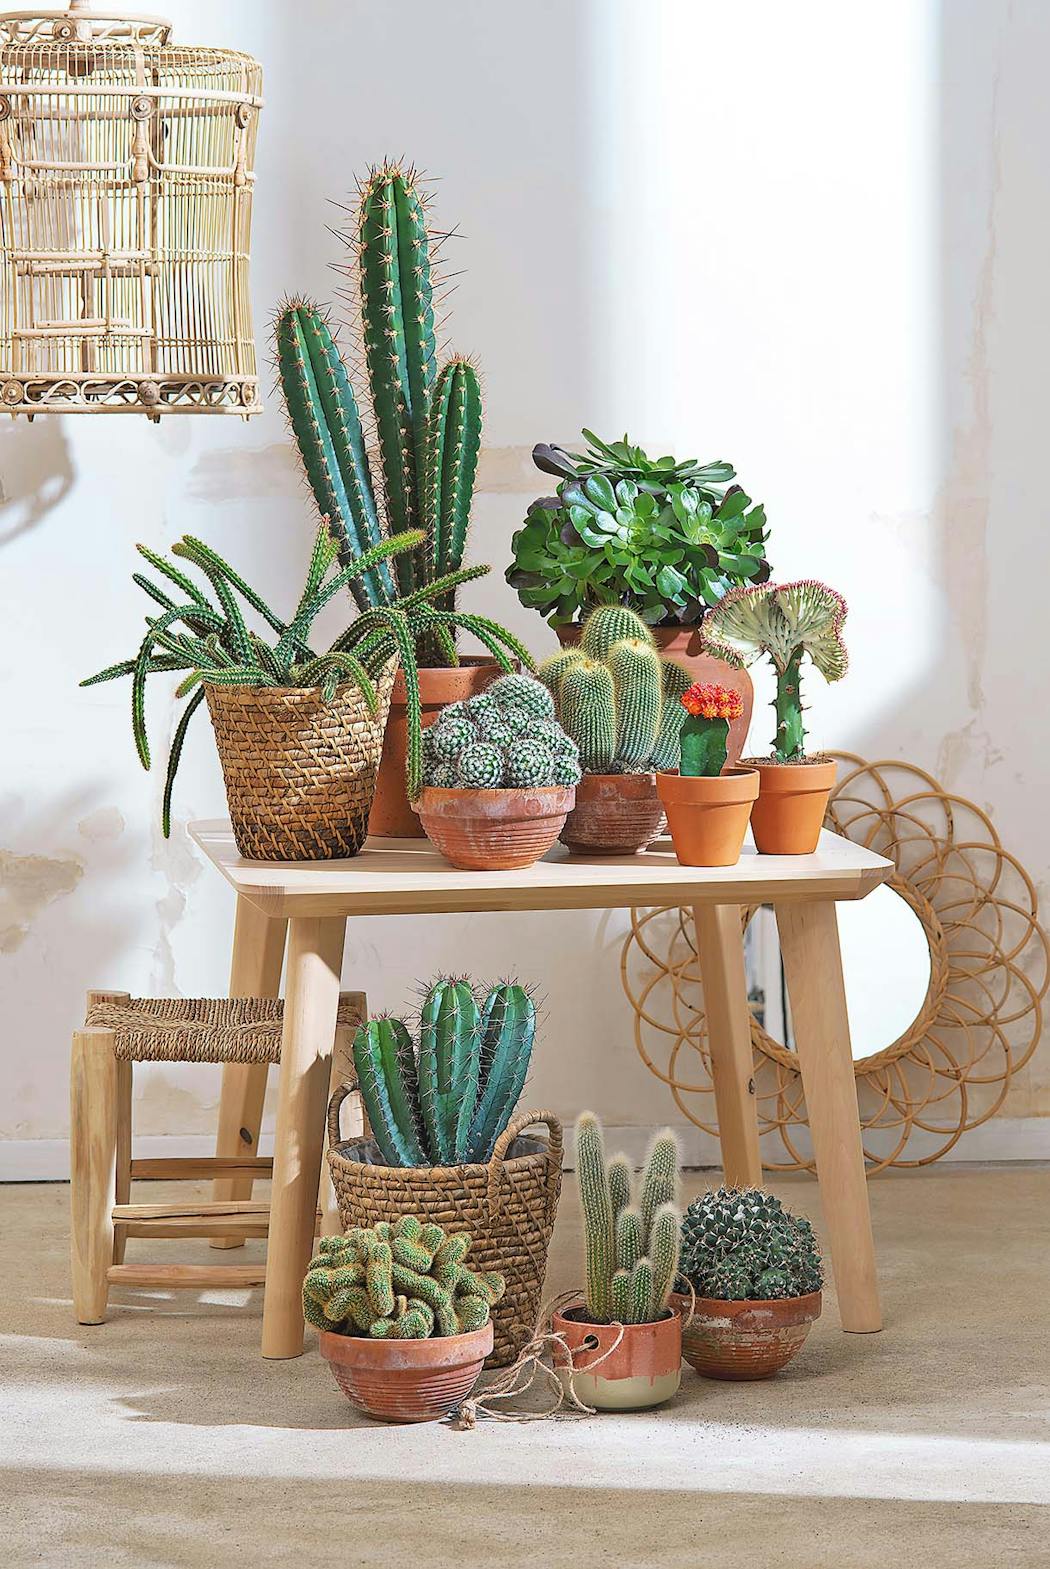 Ensemble de cactus en intérieur avec pots en terre cuite